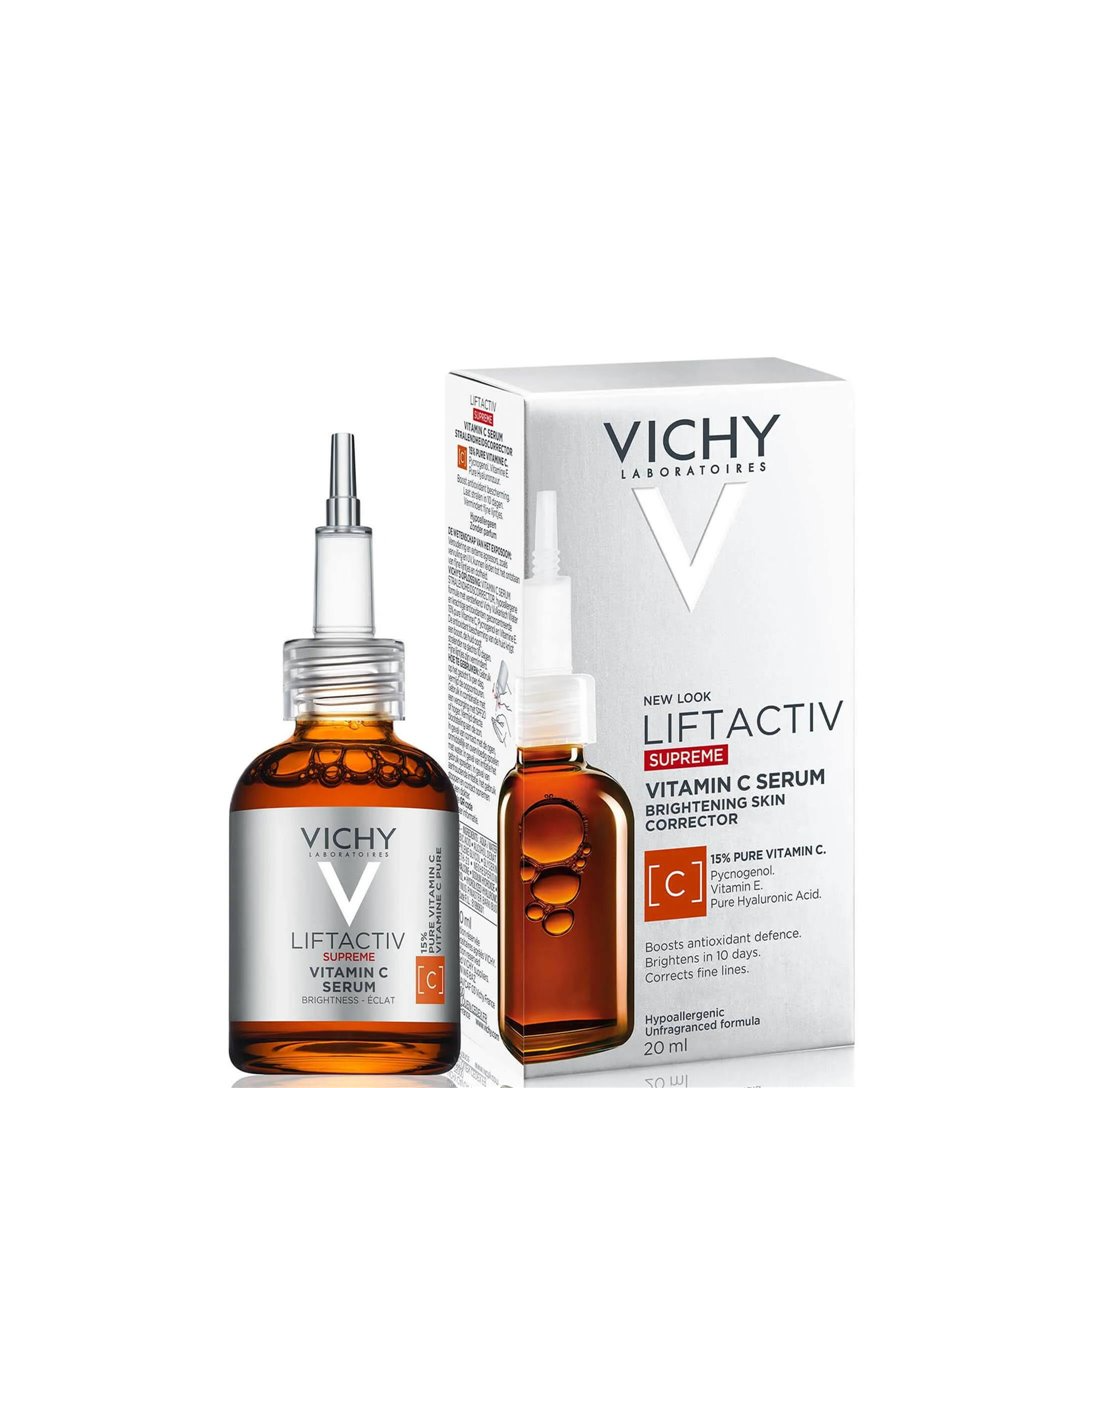 Comprar Vichy Liftactiv Vitamin C Serum a precio de oferta